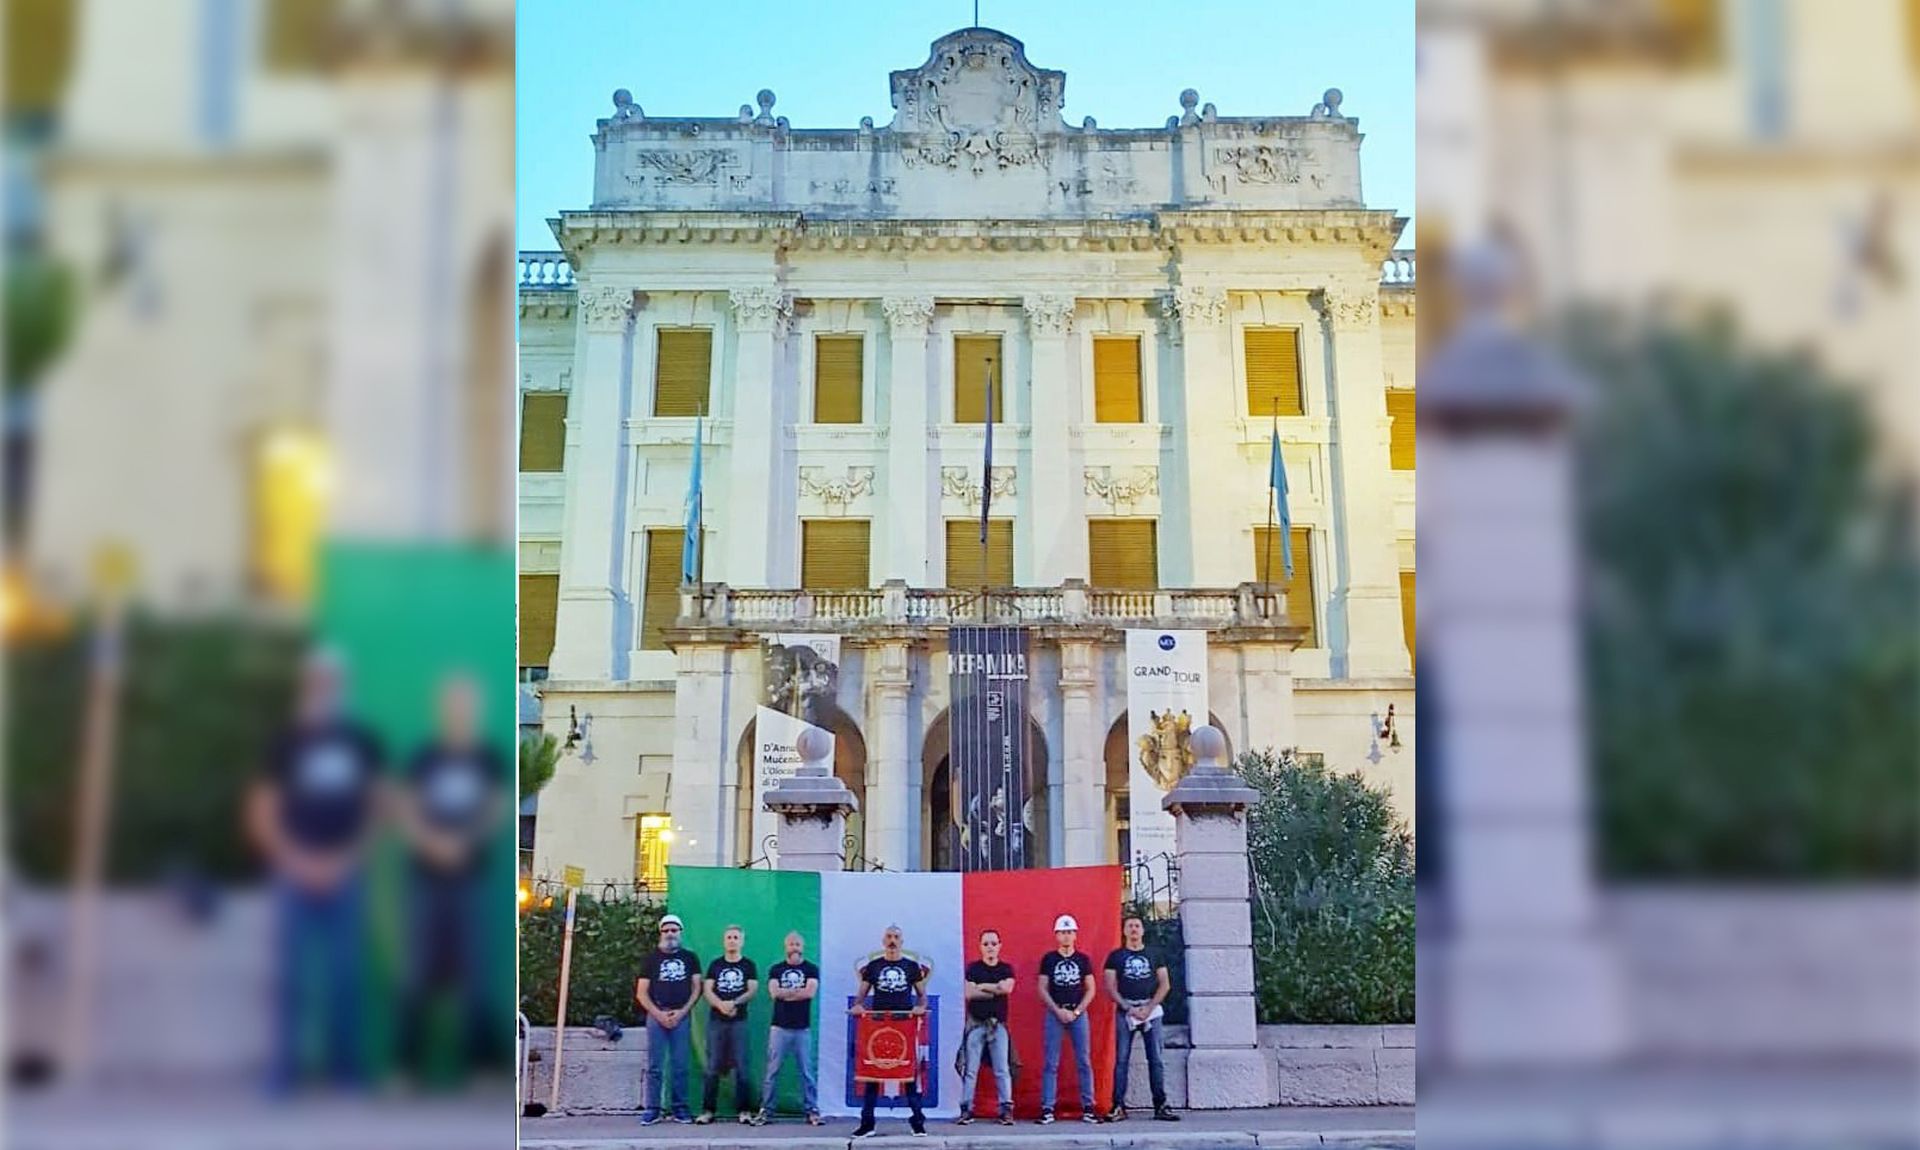 Rijeka, 12.09.2019 - Na ogradi Guvernerove palaèe u Rijeci u èetvrtak ujutro izvjeena je  povijesna zastava Kraljevine Italiije koju je policija nakon dojave oko 7 sedam sati skinula, a na mjestu dogaðaja zatekla je dvojicu talijanskih mladiæa s manjom zastavom, doznaje se od Policijske uprave primorsko-goranske.
foto HINA/ Twitter/ ds